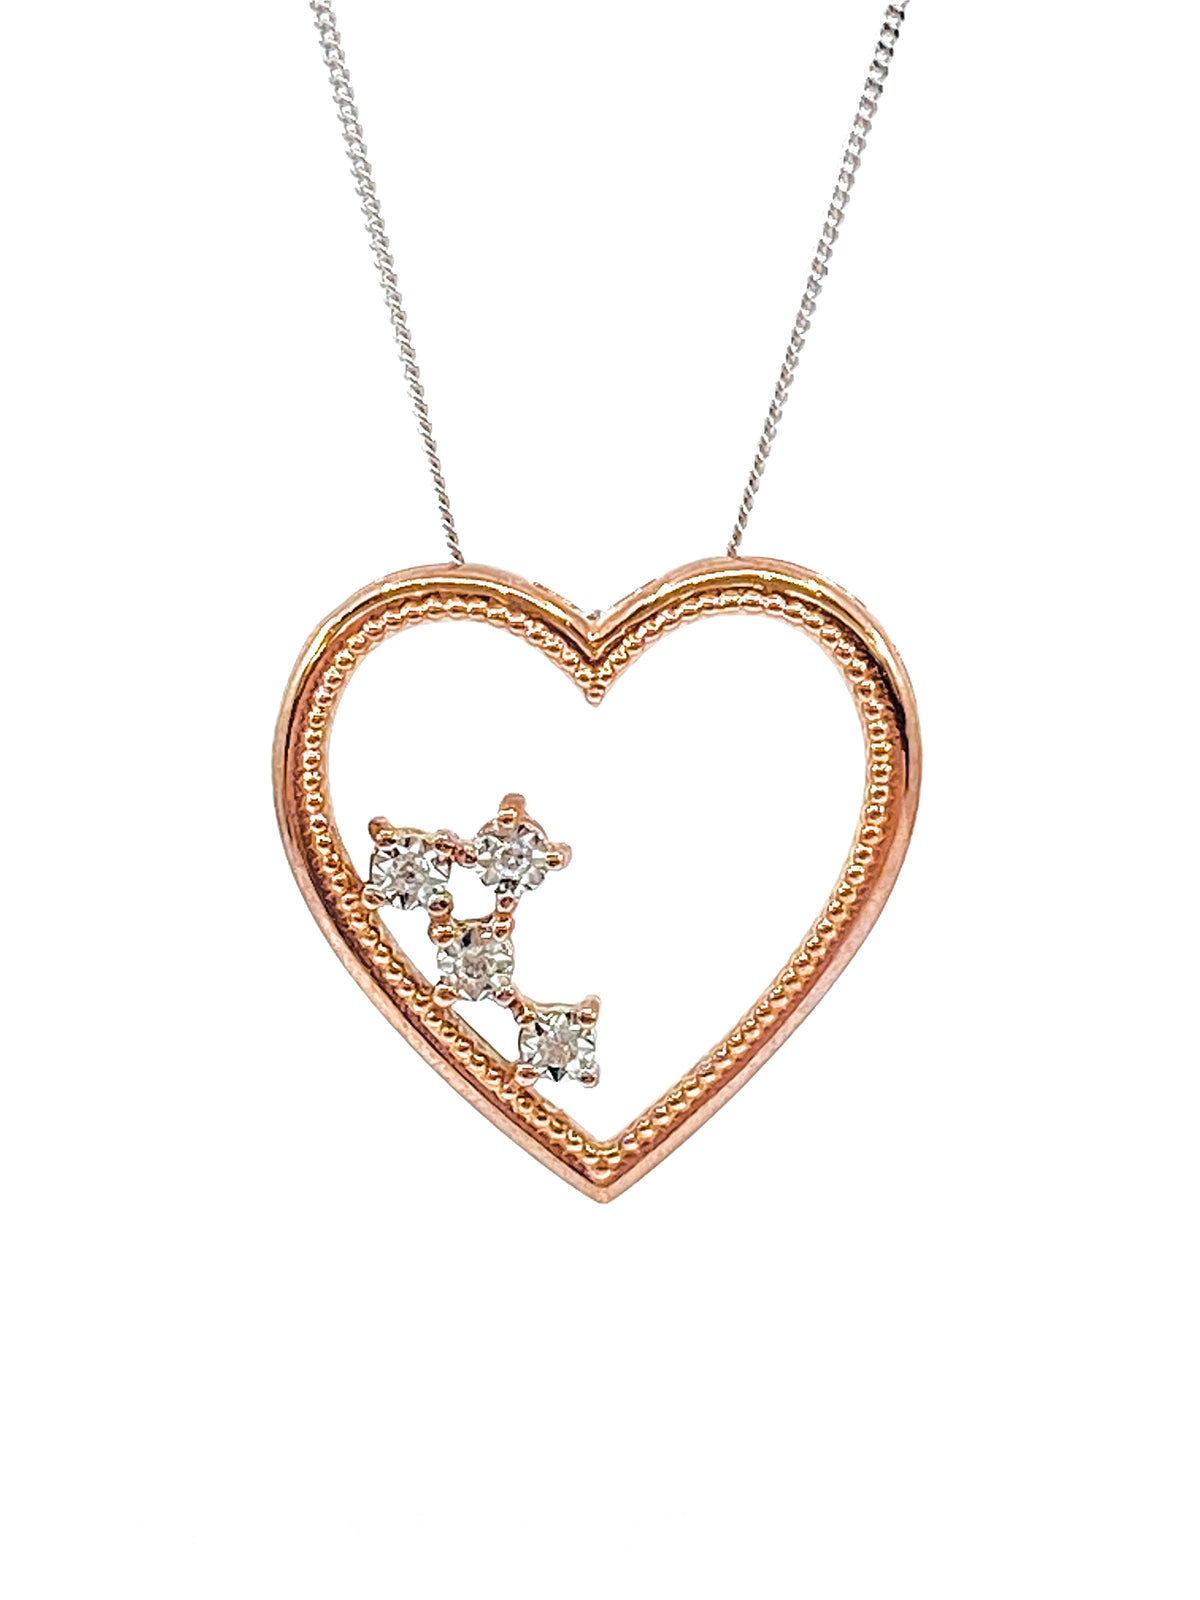 10K White &amp; Rose Gold 0.02cttw Diamond Heart Pendant, 18&quot;